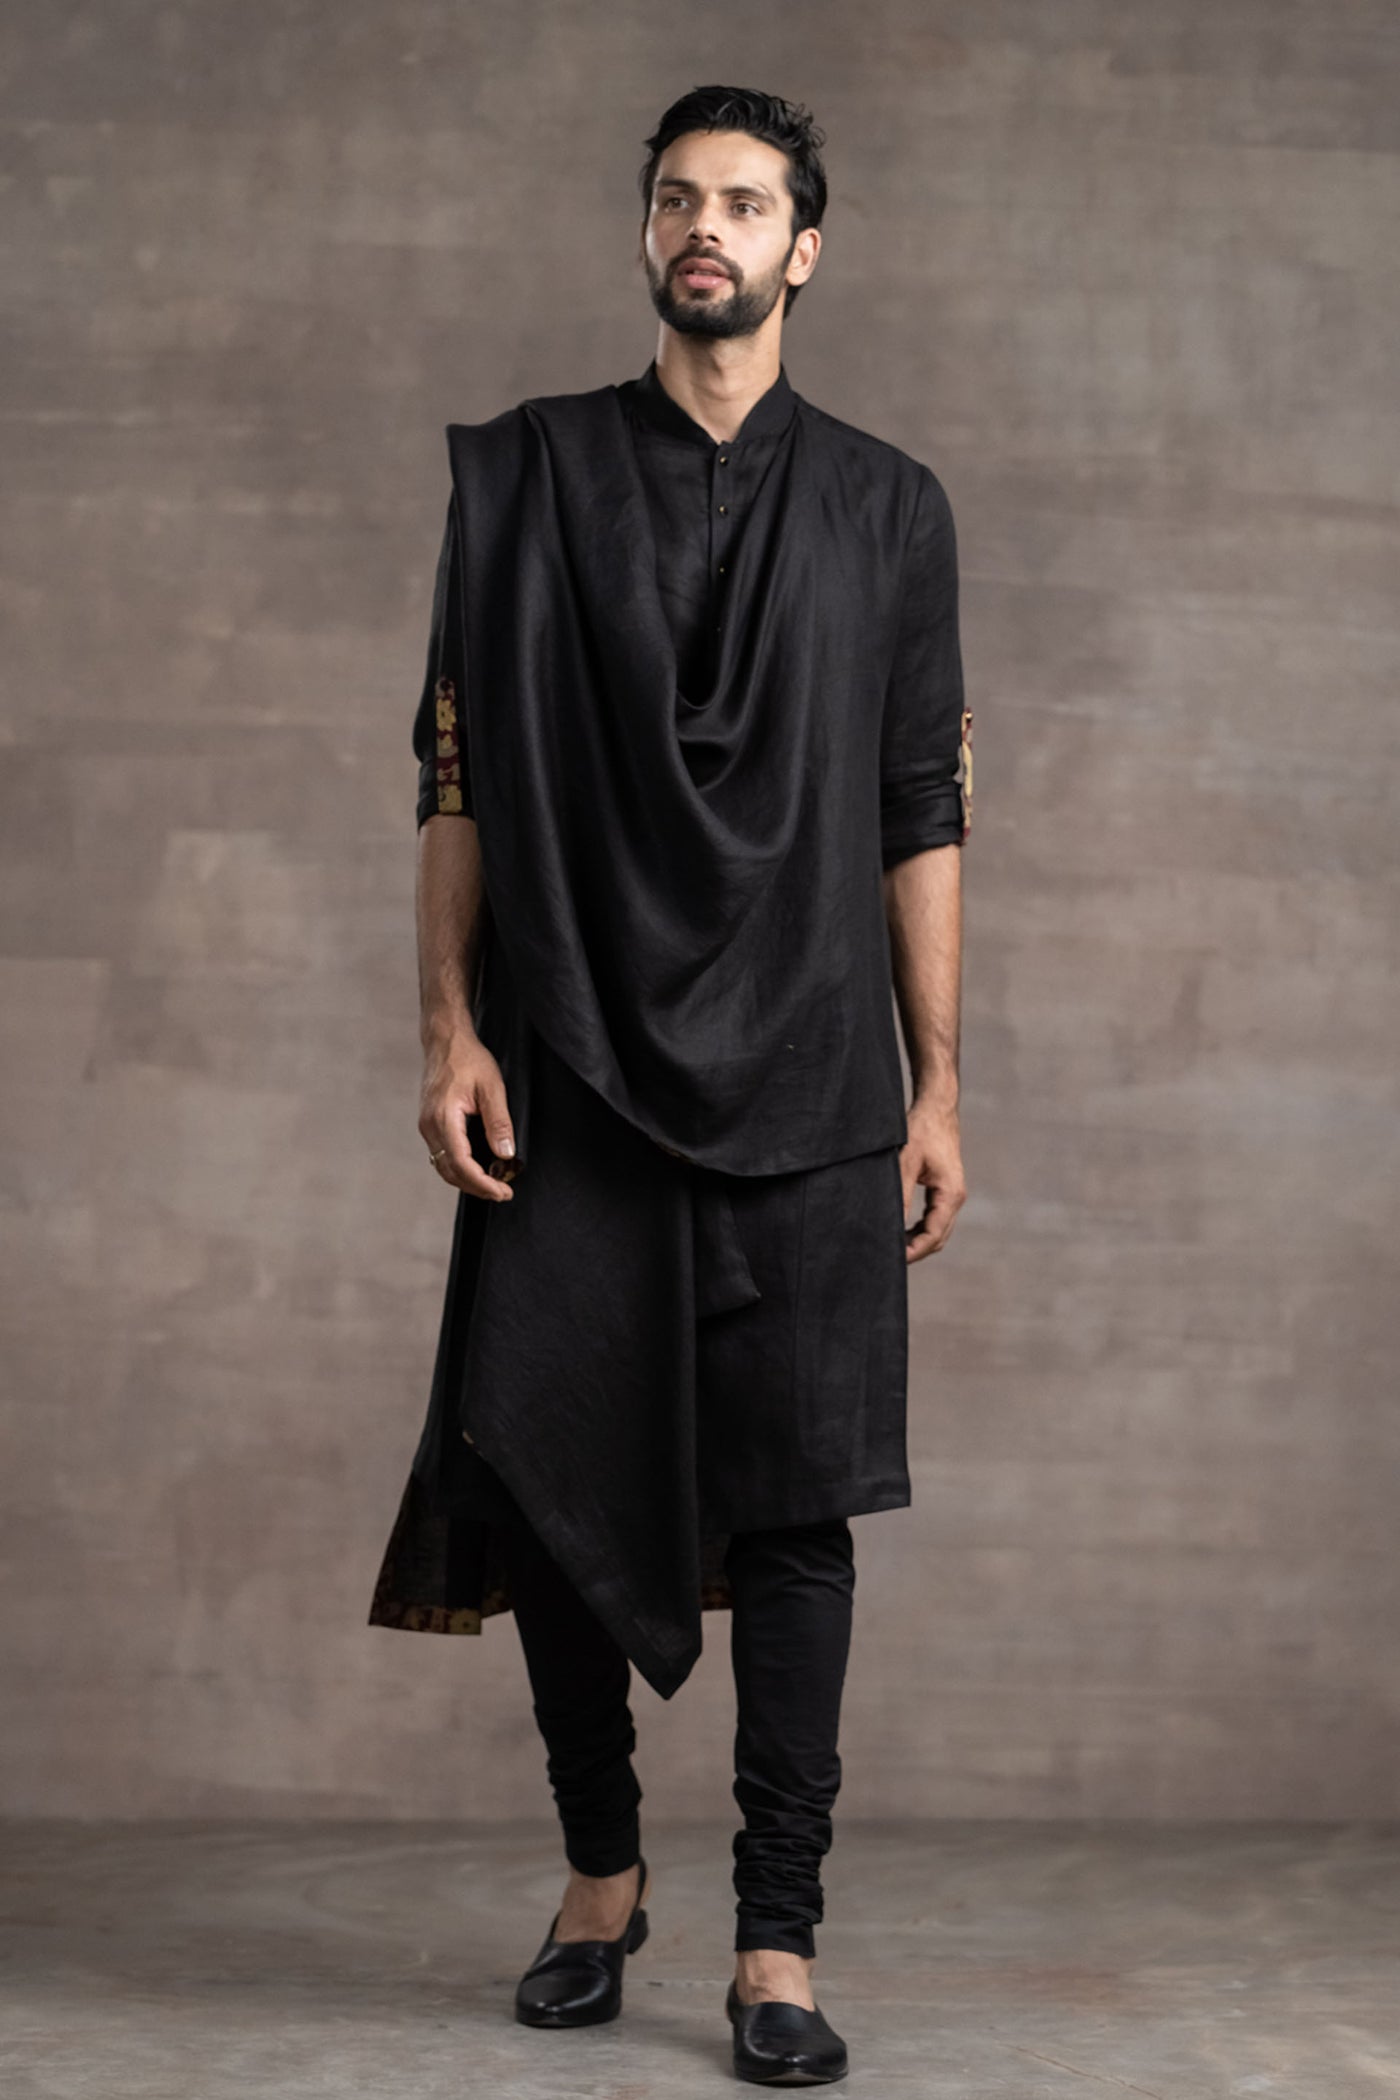 Tarun Tahitliani Draped Linen Kurta indian designer wear menswear online shopping melange singapore